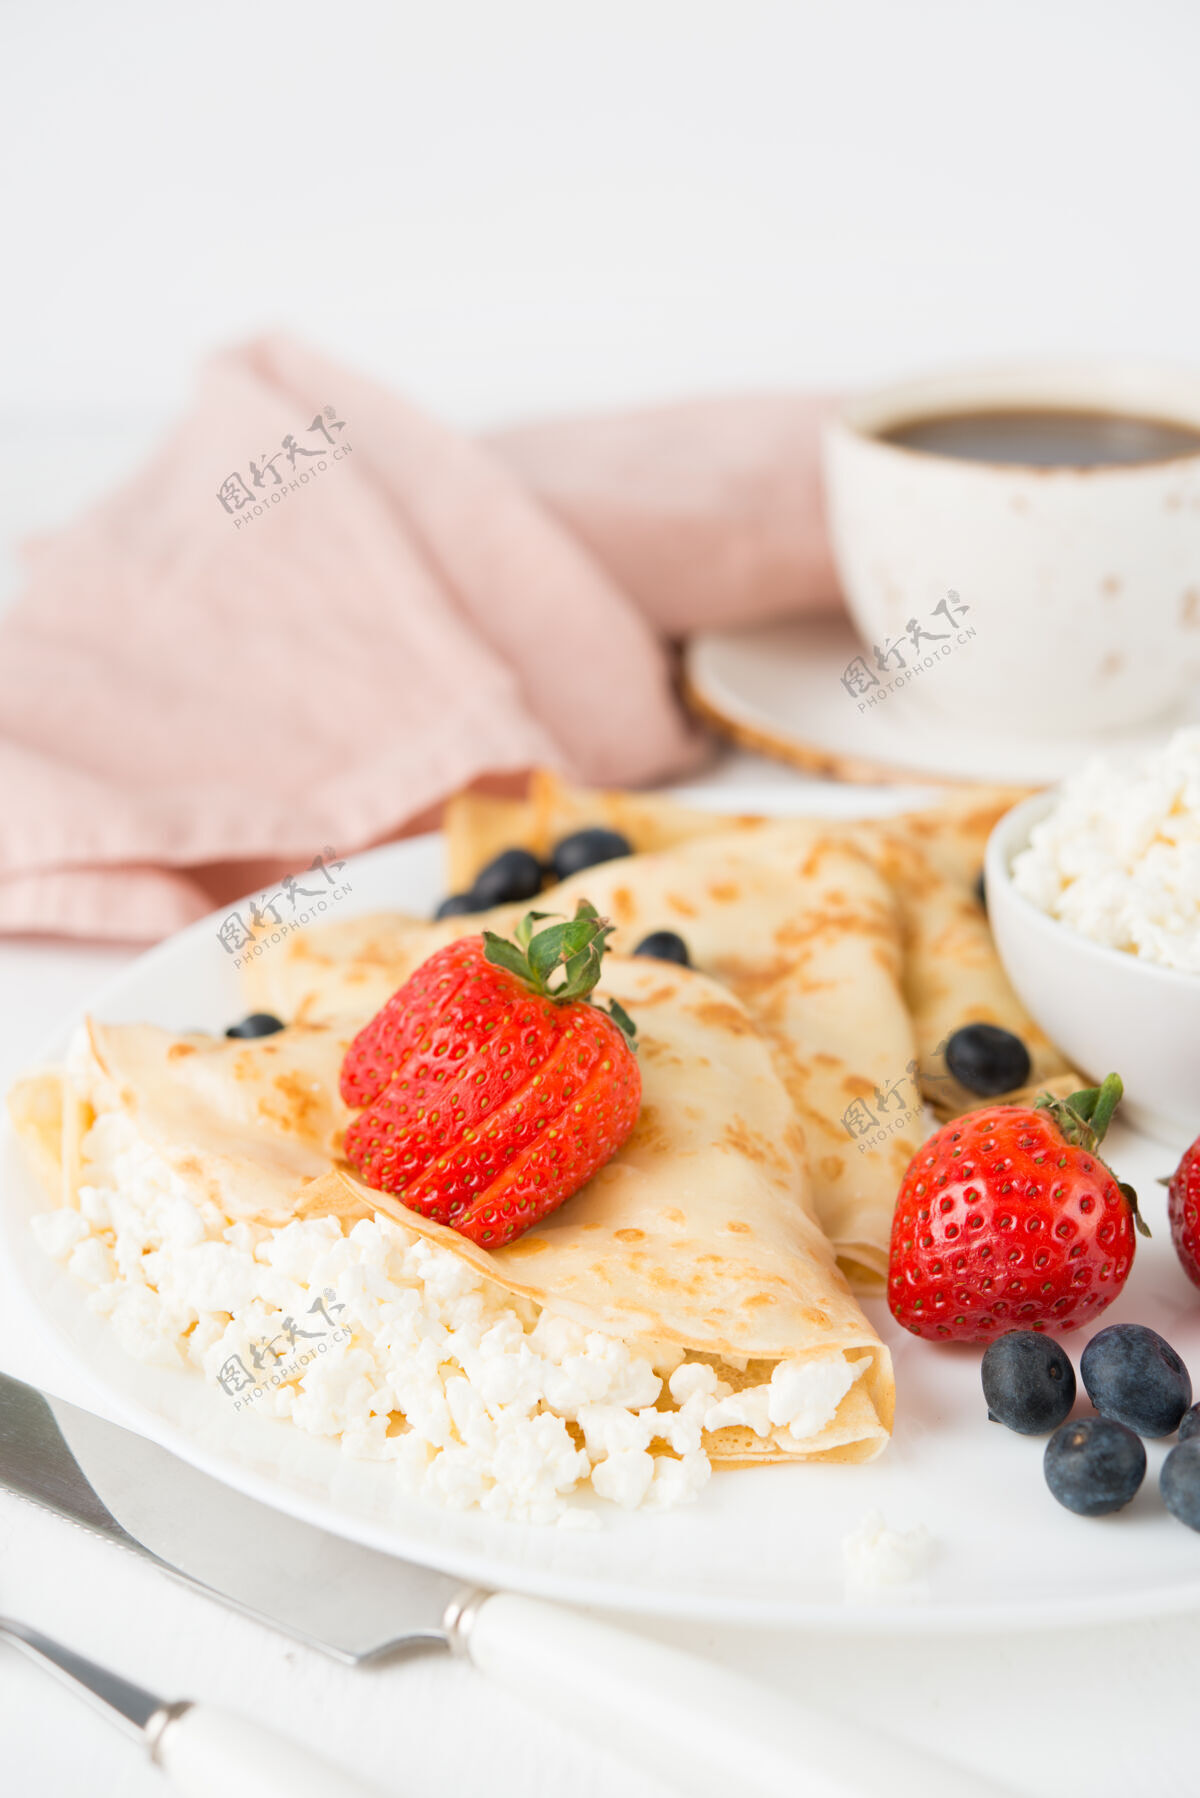 俄罗斯传统的俄罗斯薄煎饼与白干酪和浆果在一个盘子里薄煎饼法国早晨